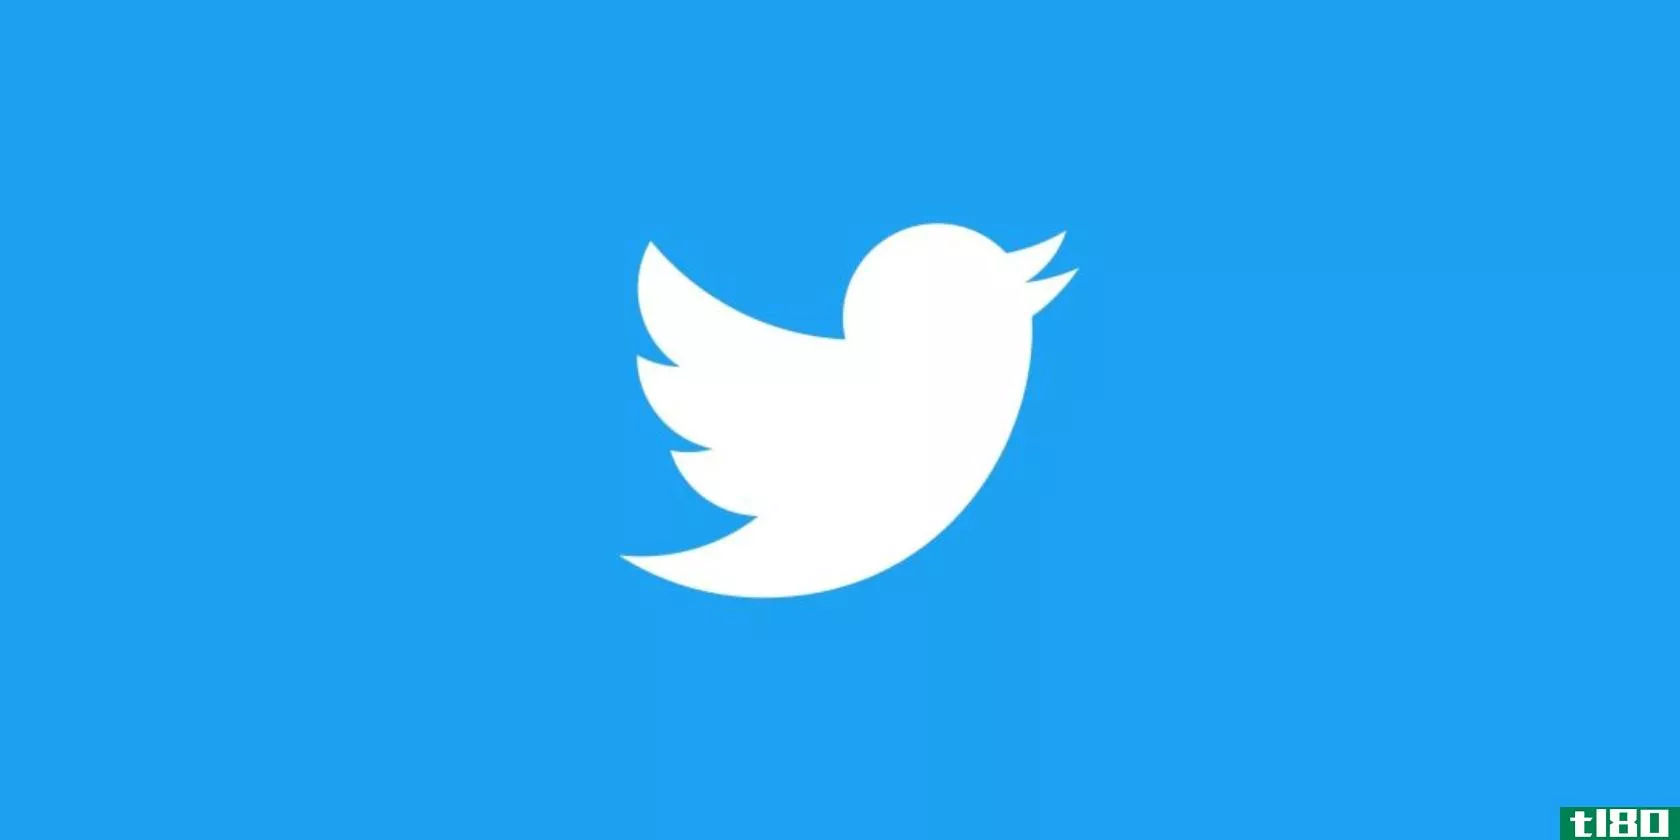 twitter-logo-white-on-blue